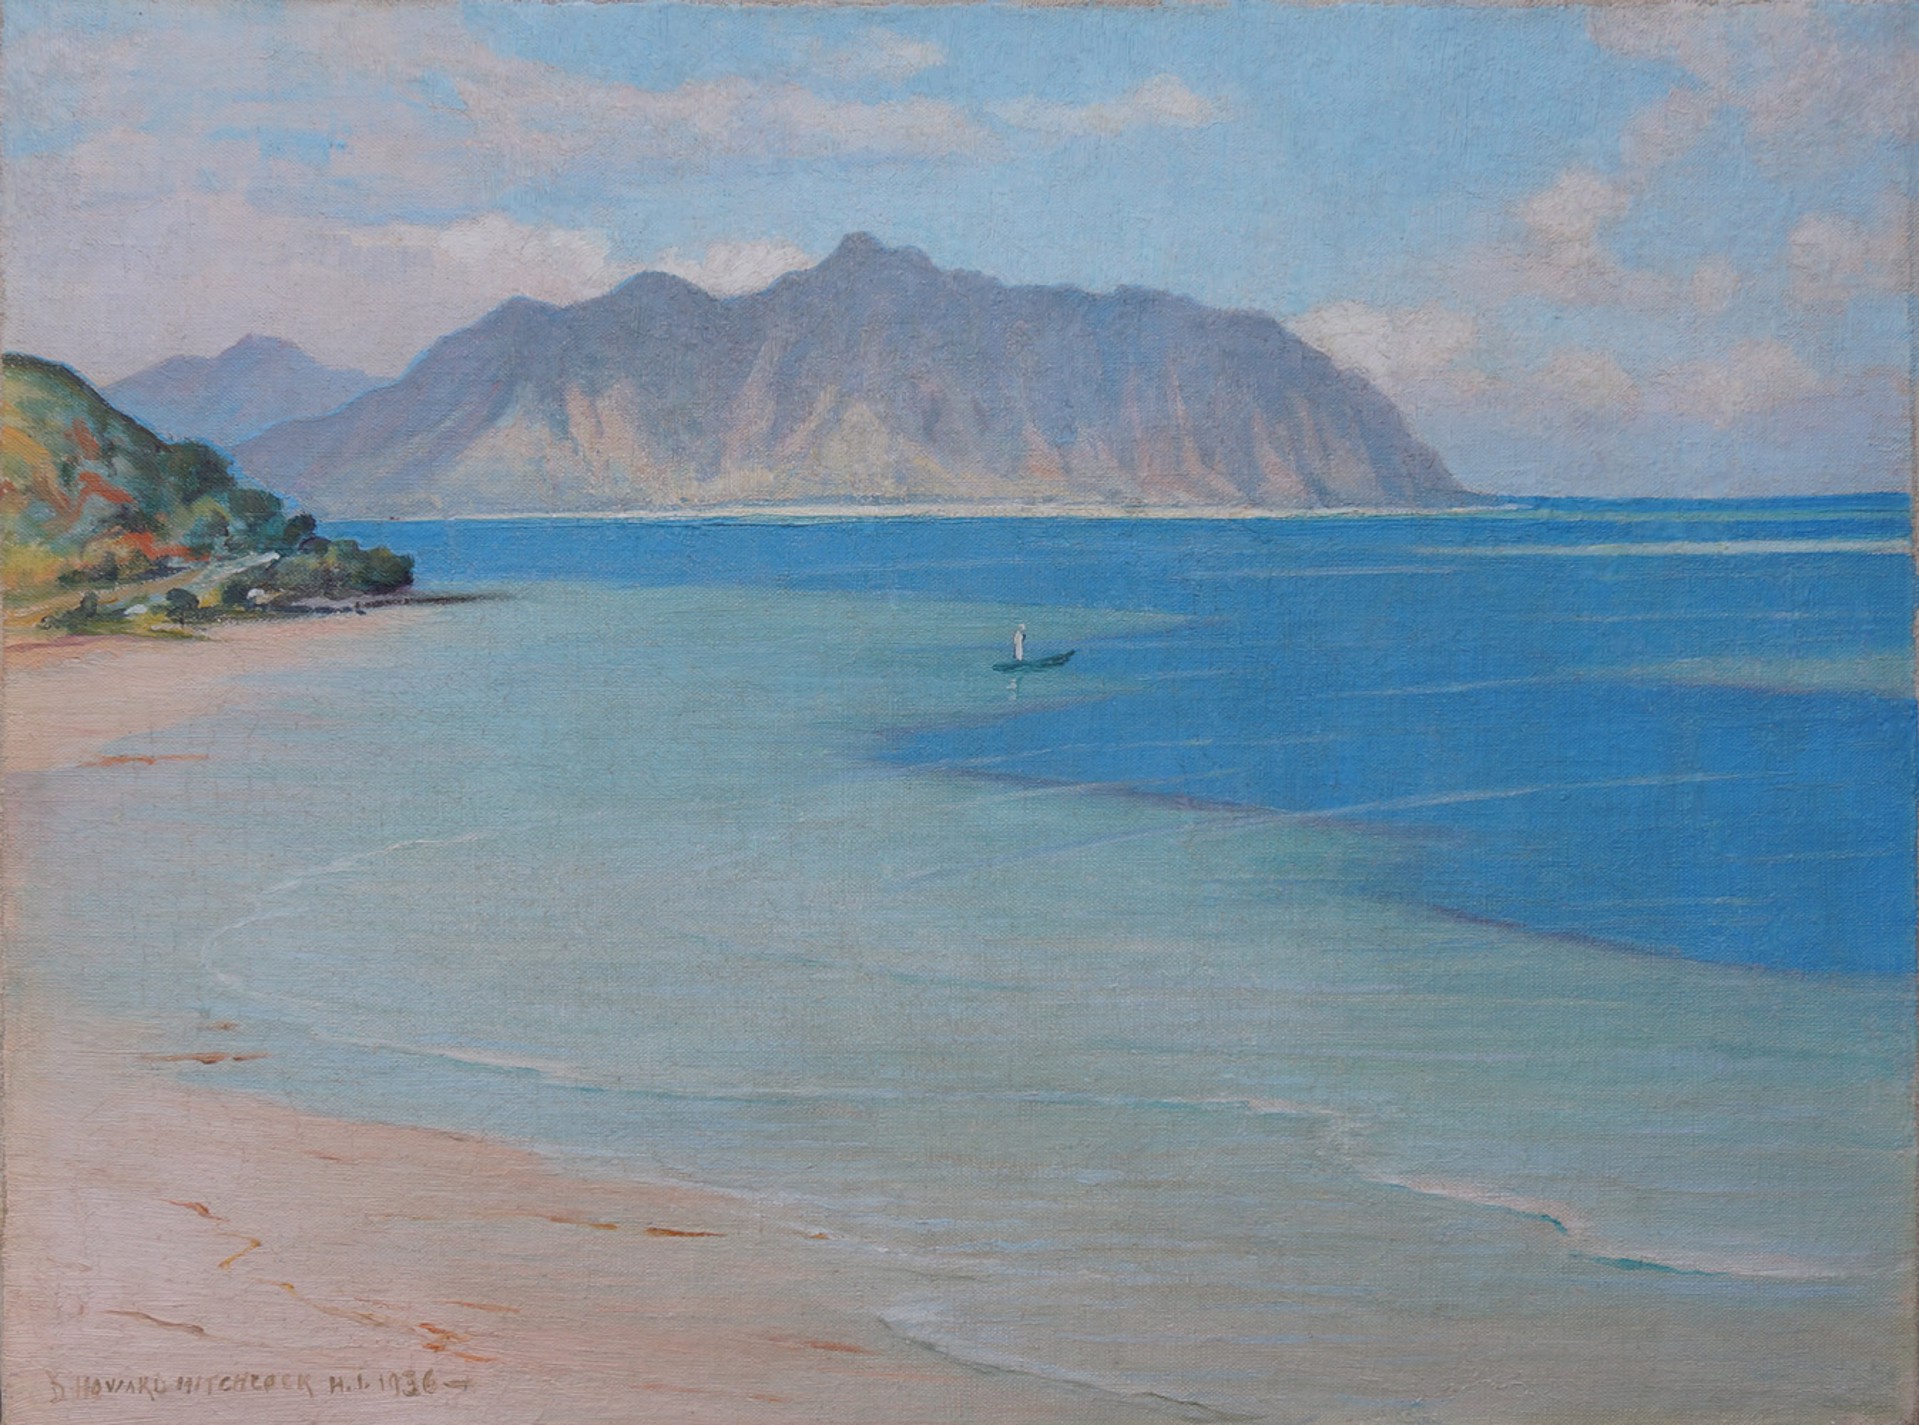 Kualoa Point from Heia Beach, Oahu by D. Howard Hitchcock